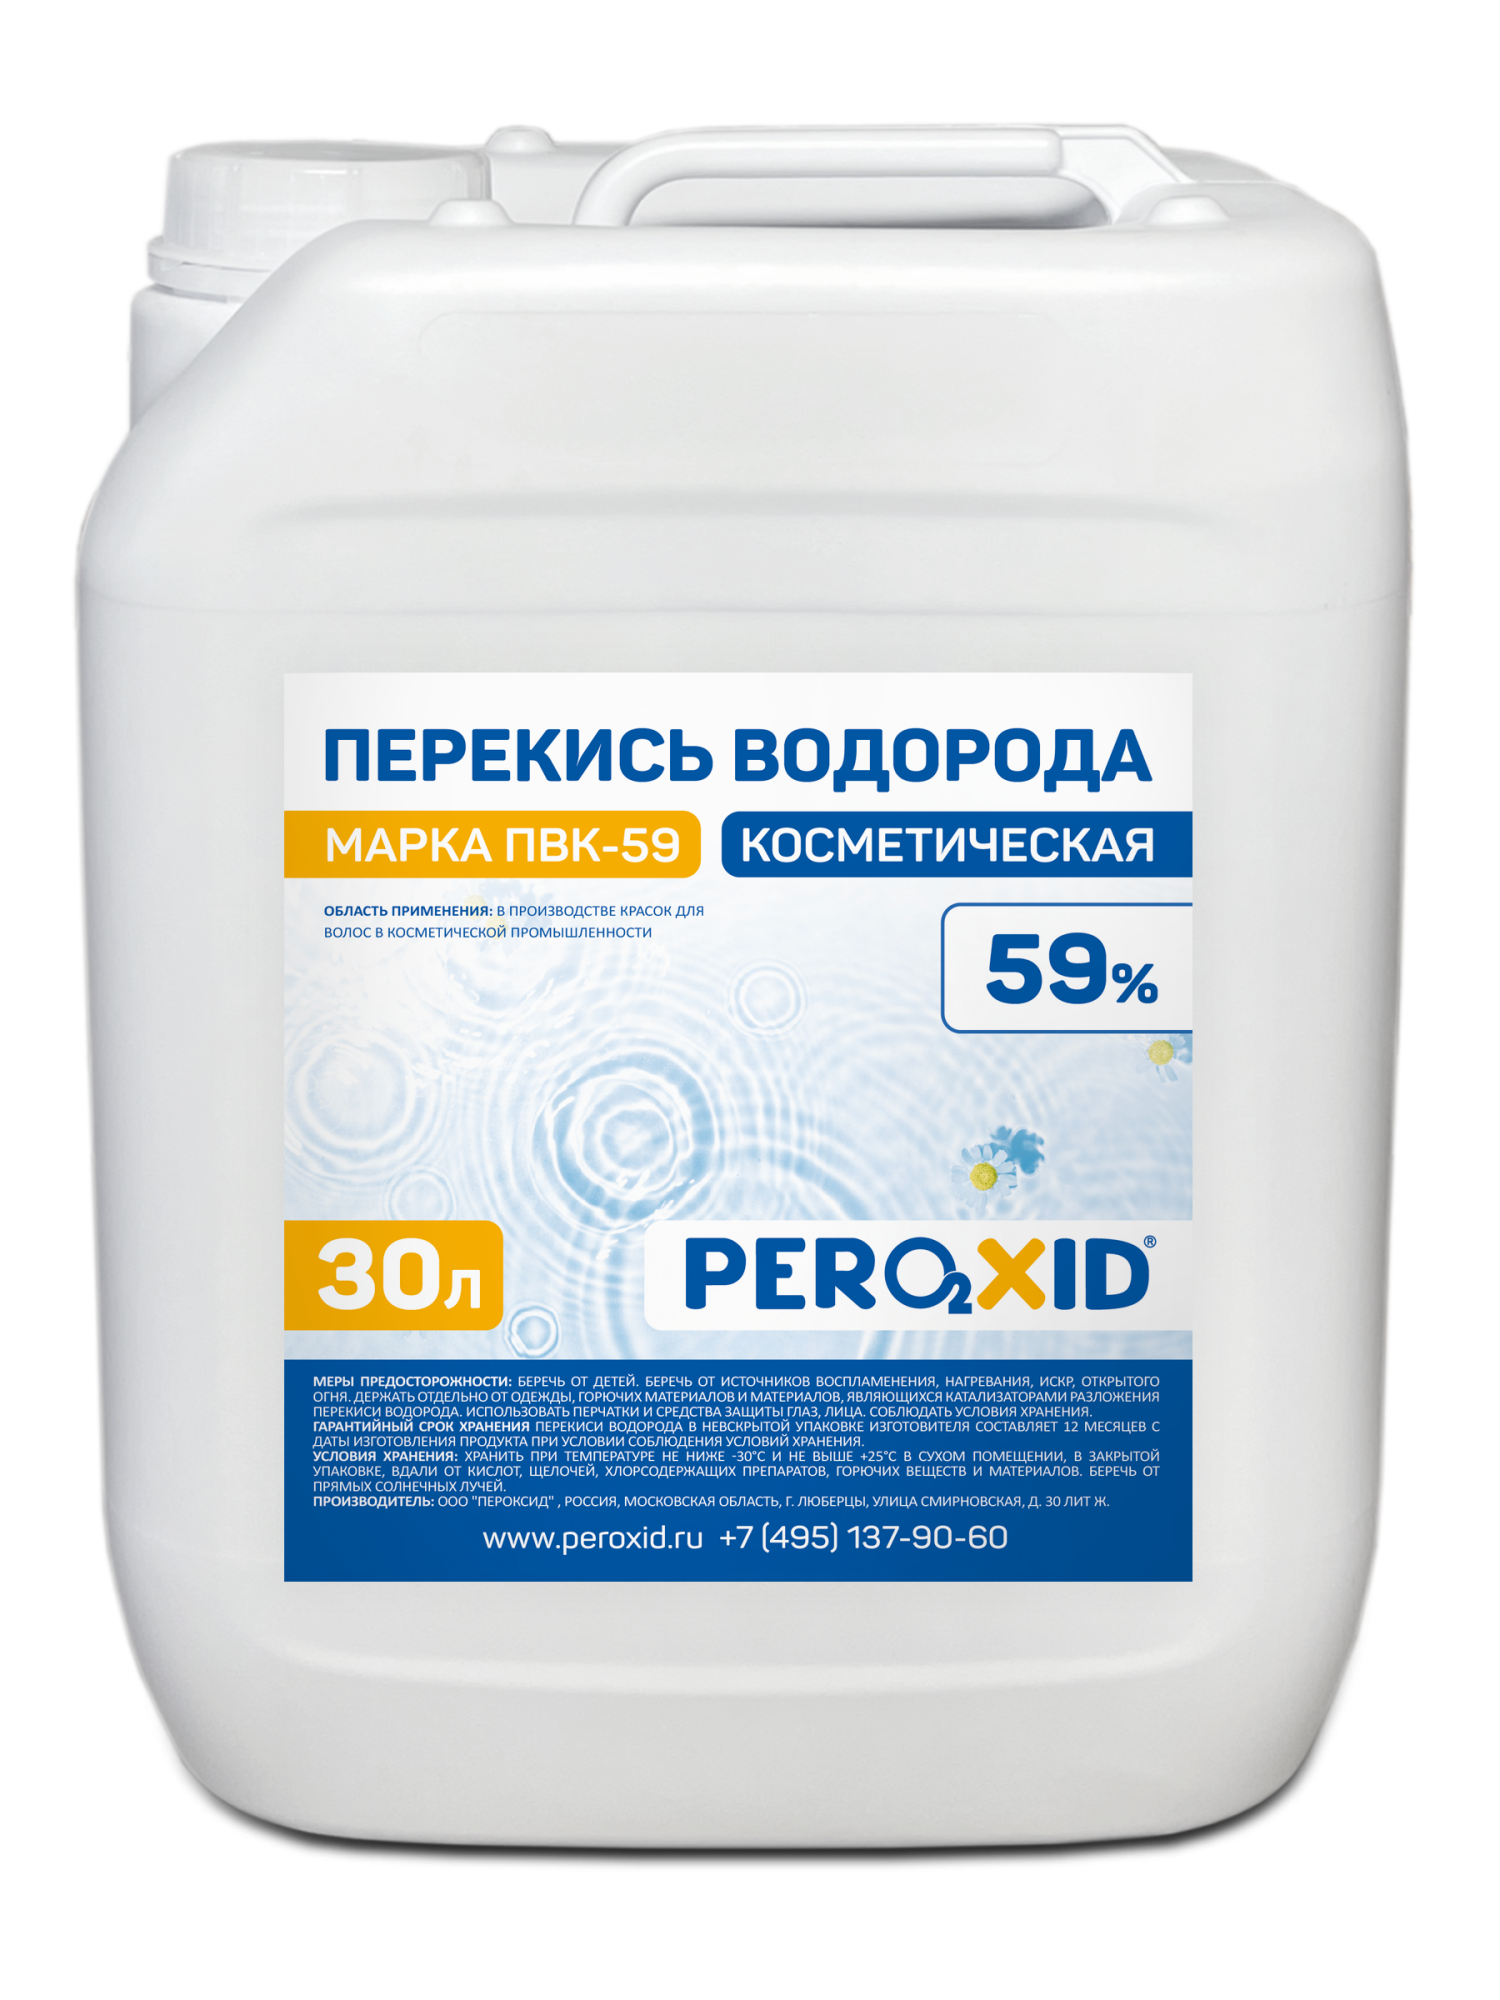 Перекись водорода косметическая PEROXID 59% марка ПВК - 59 ТУ 2123-005-25665344-2009 30 л/34 кг